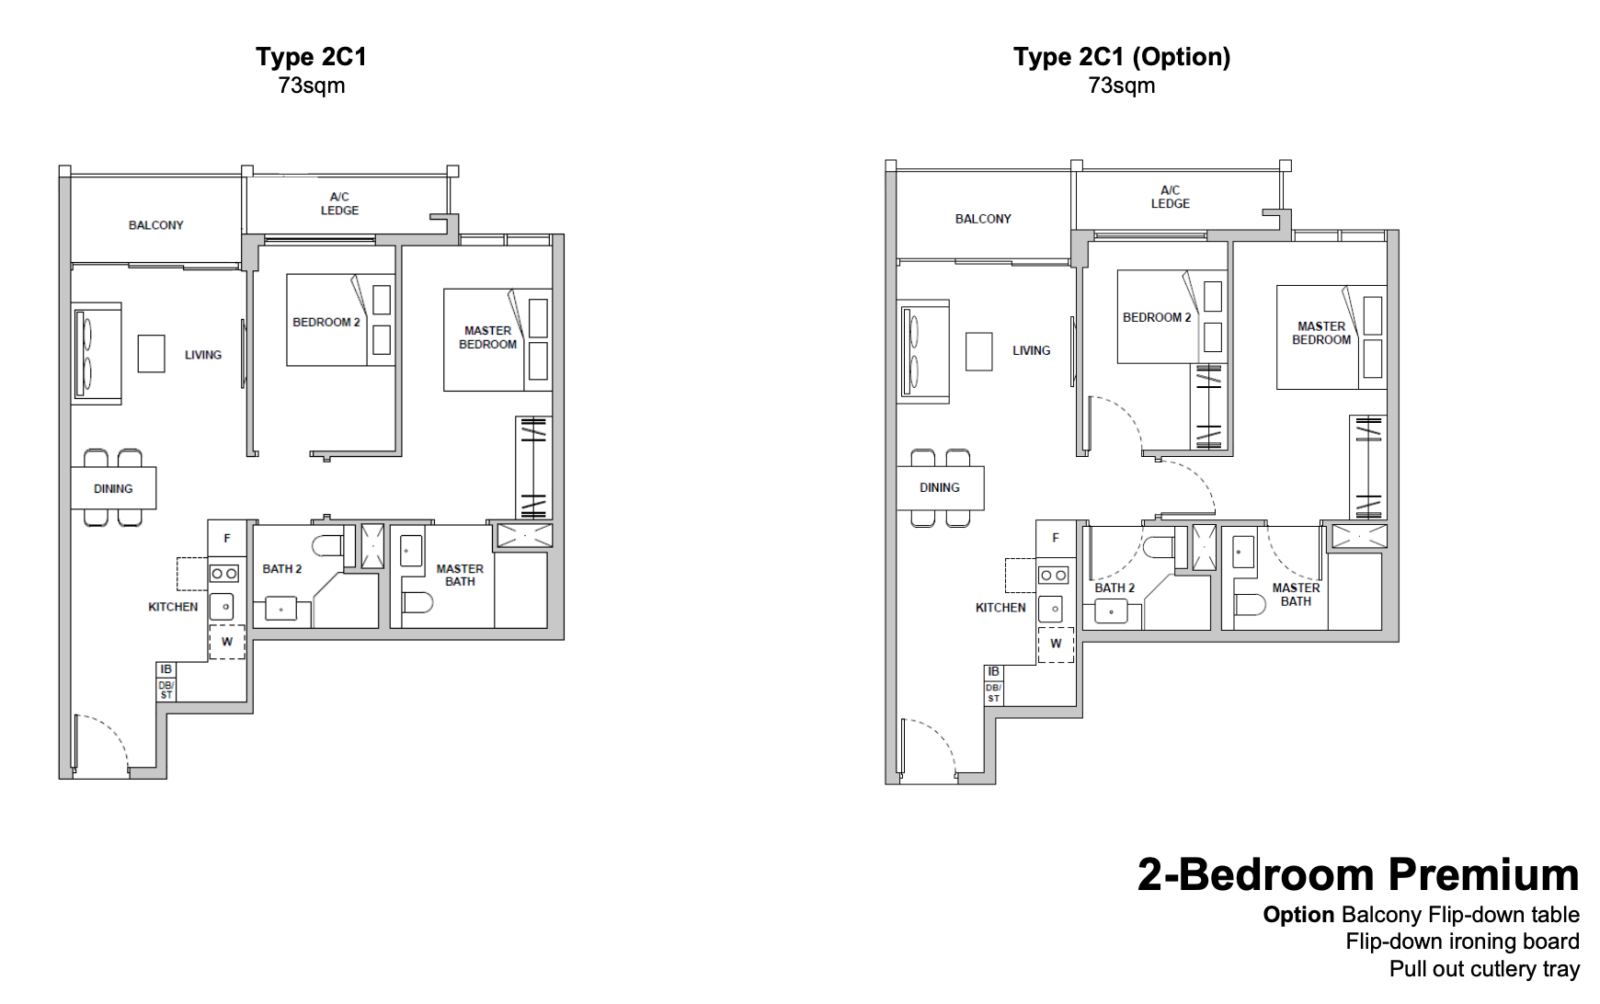 tmw maxwell 2 bedroom layout